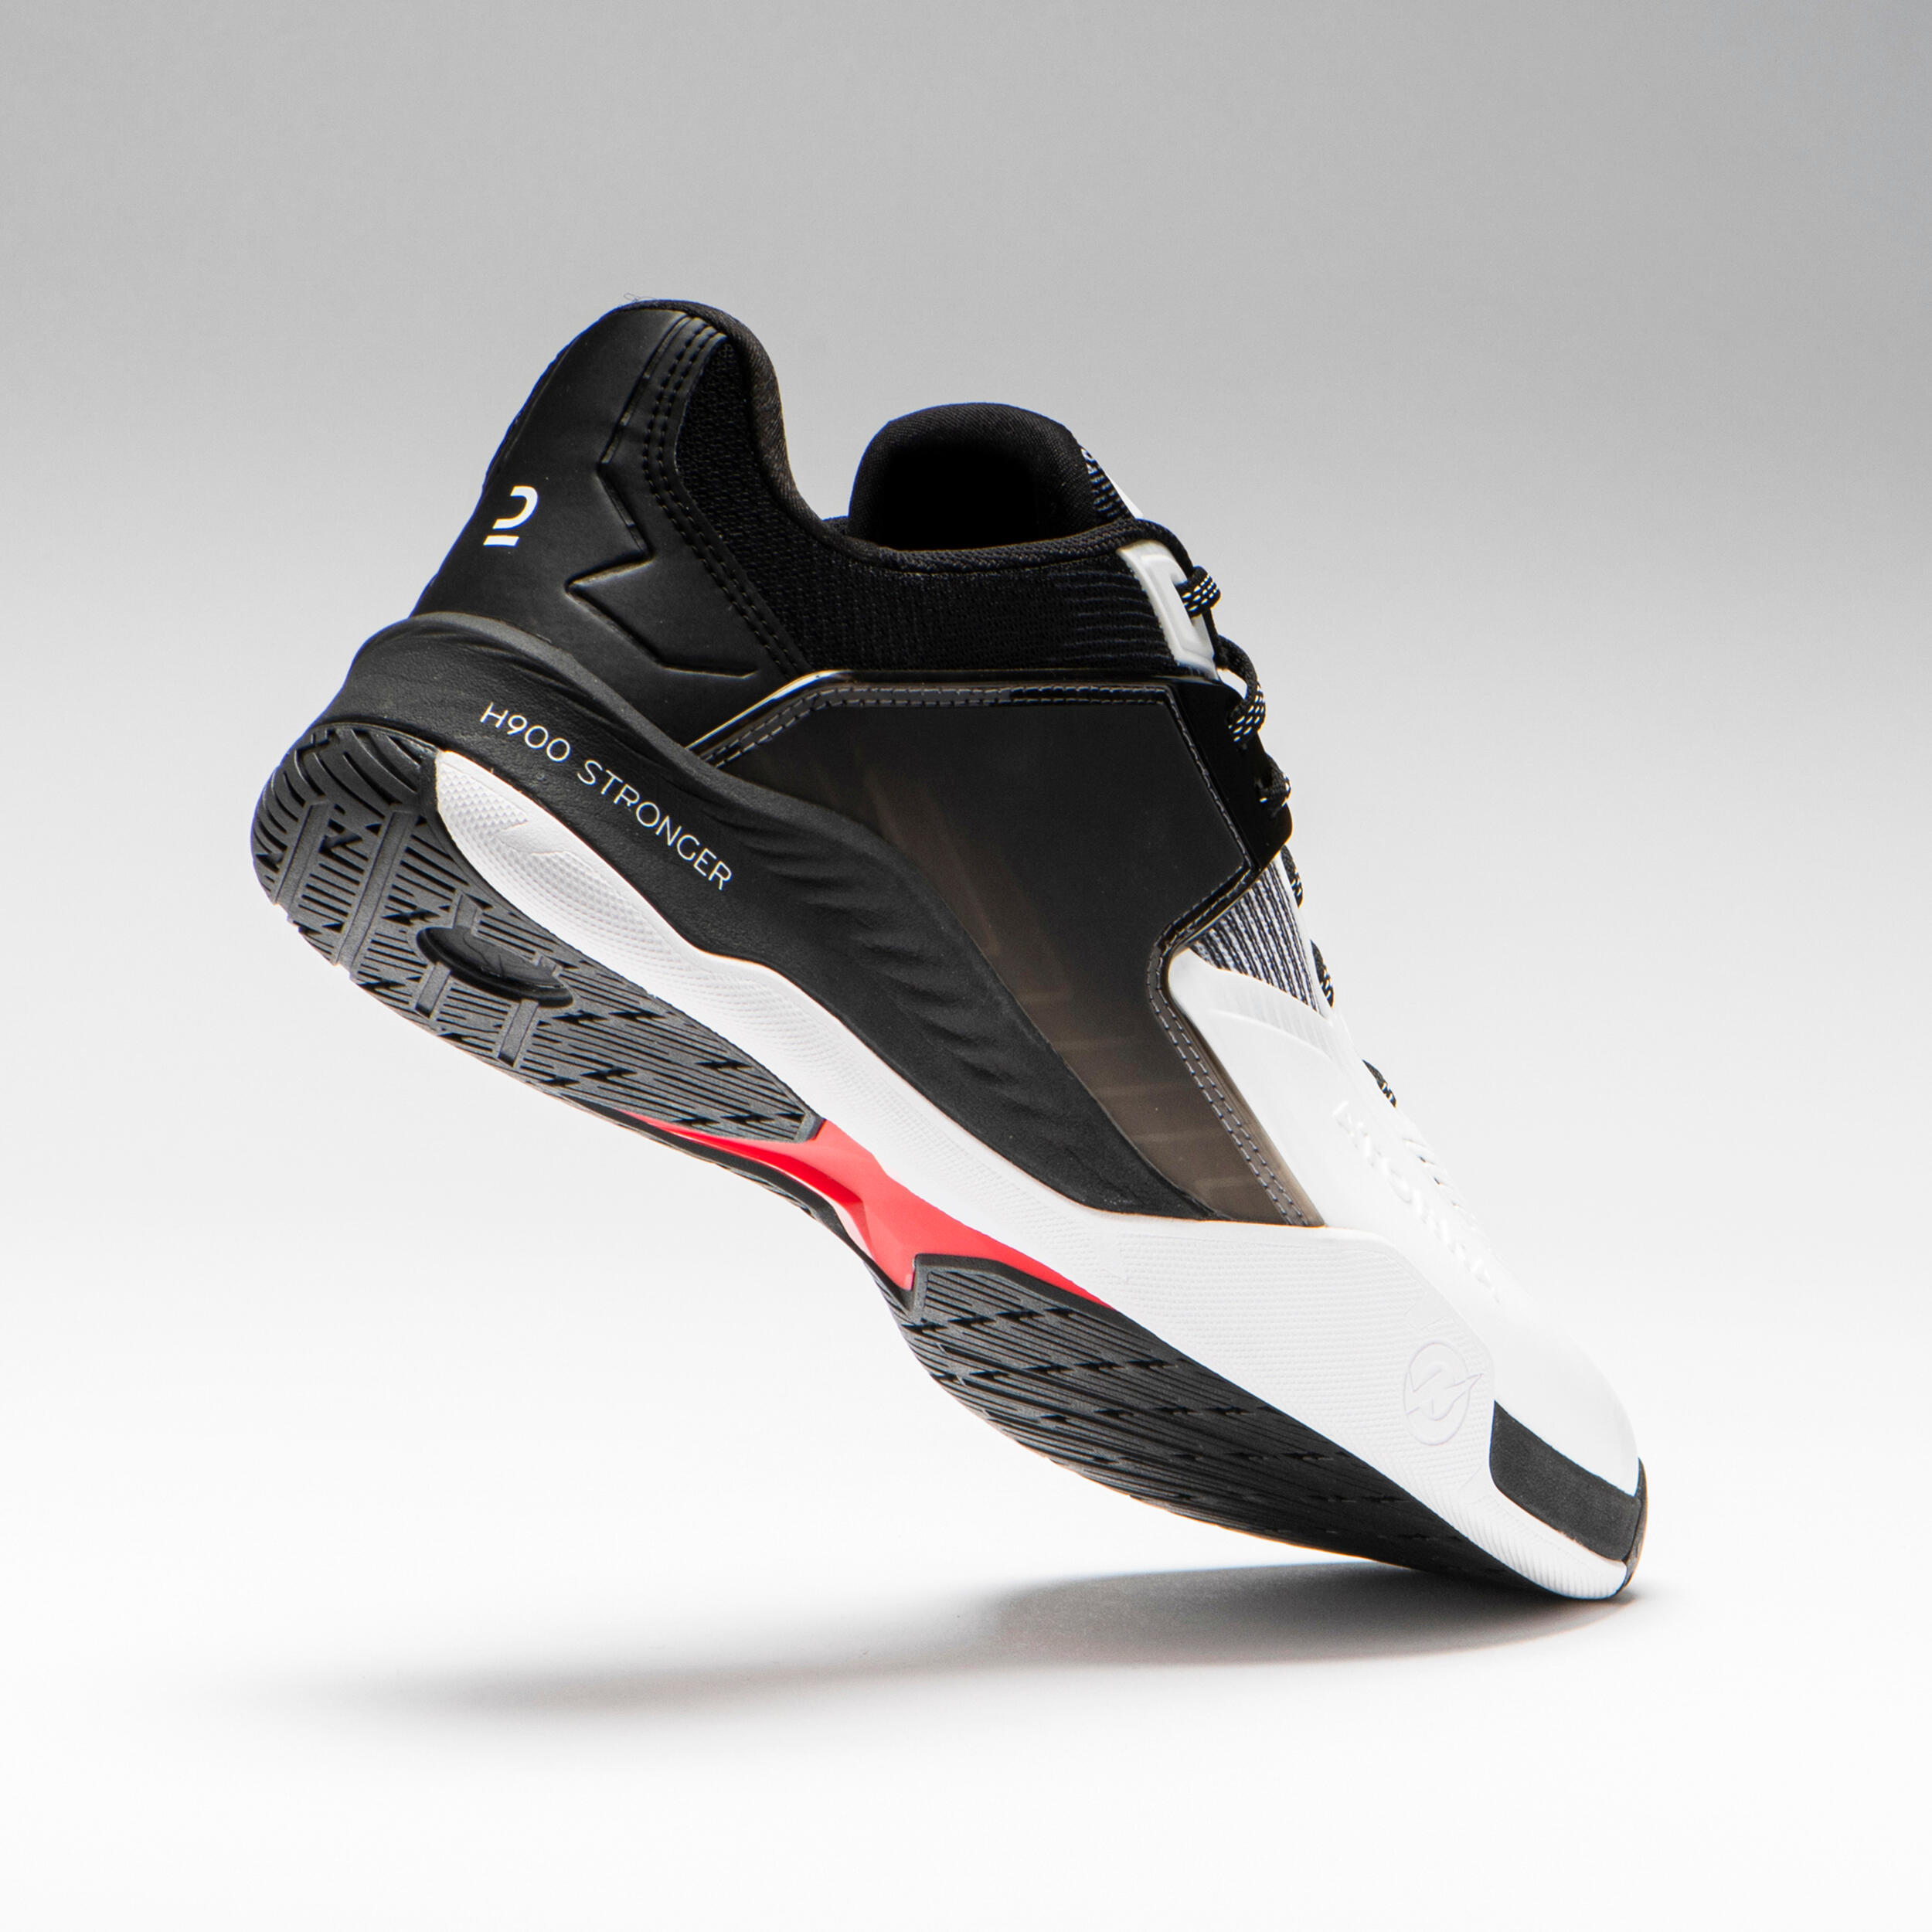 Men's Handball Shoes H900 Stronger - White/Black 11/14